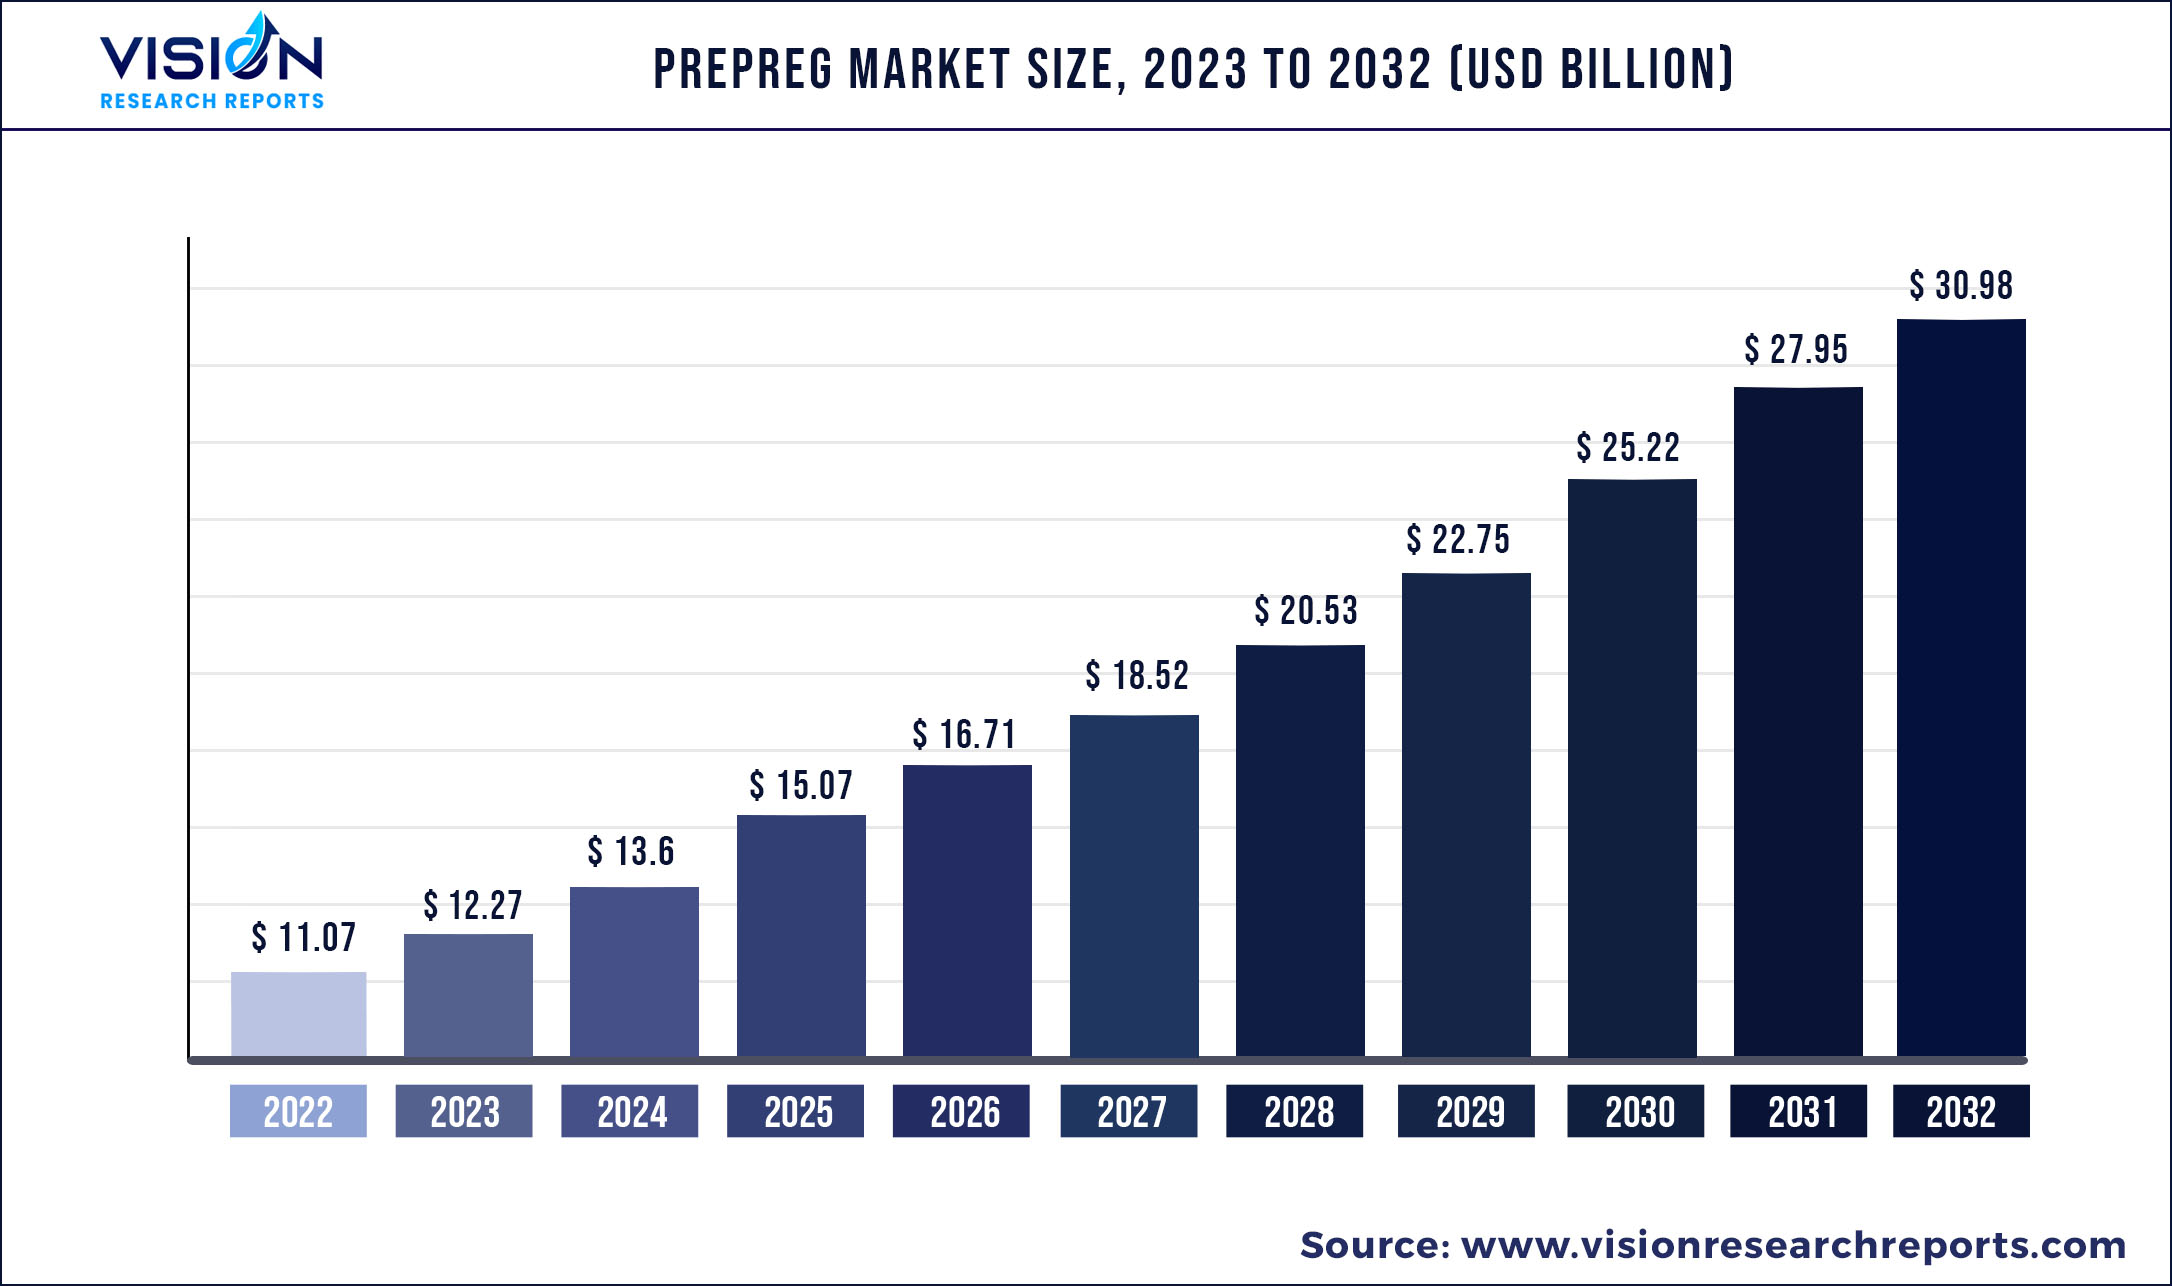 Prepreg Market Size 2023 to 20232